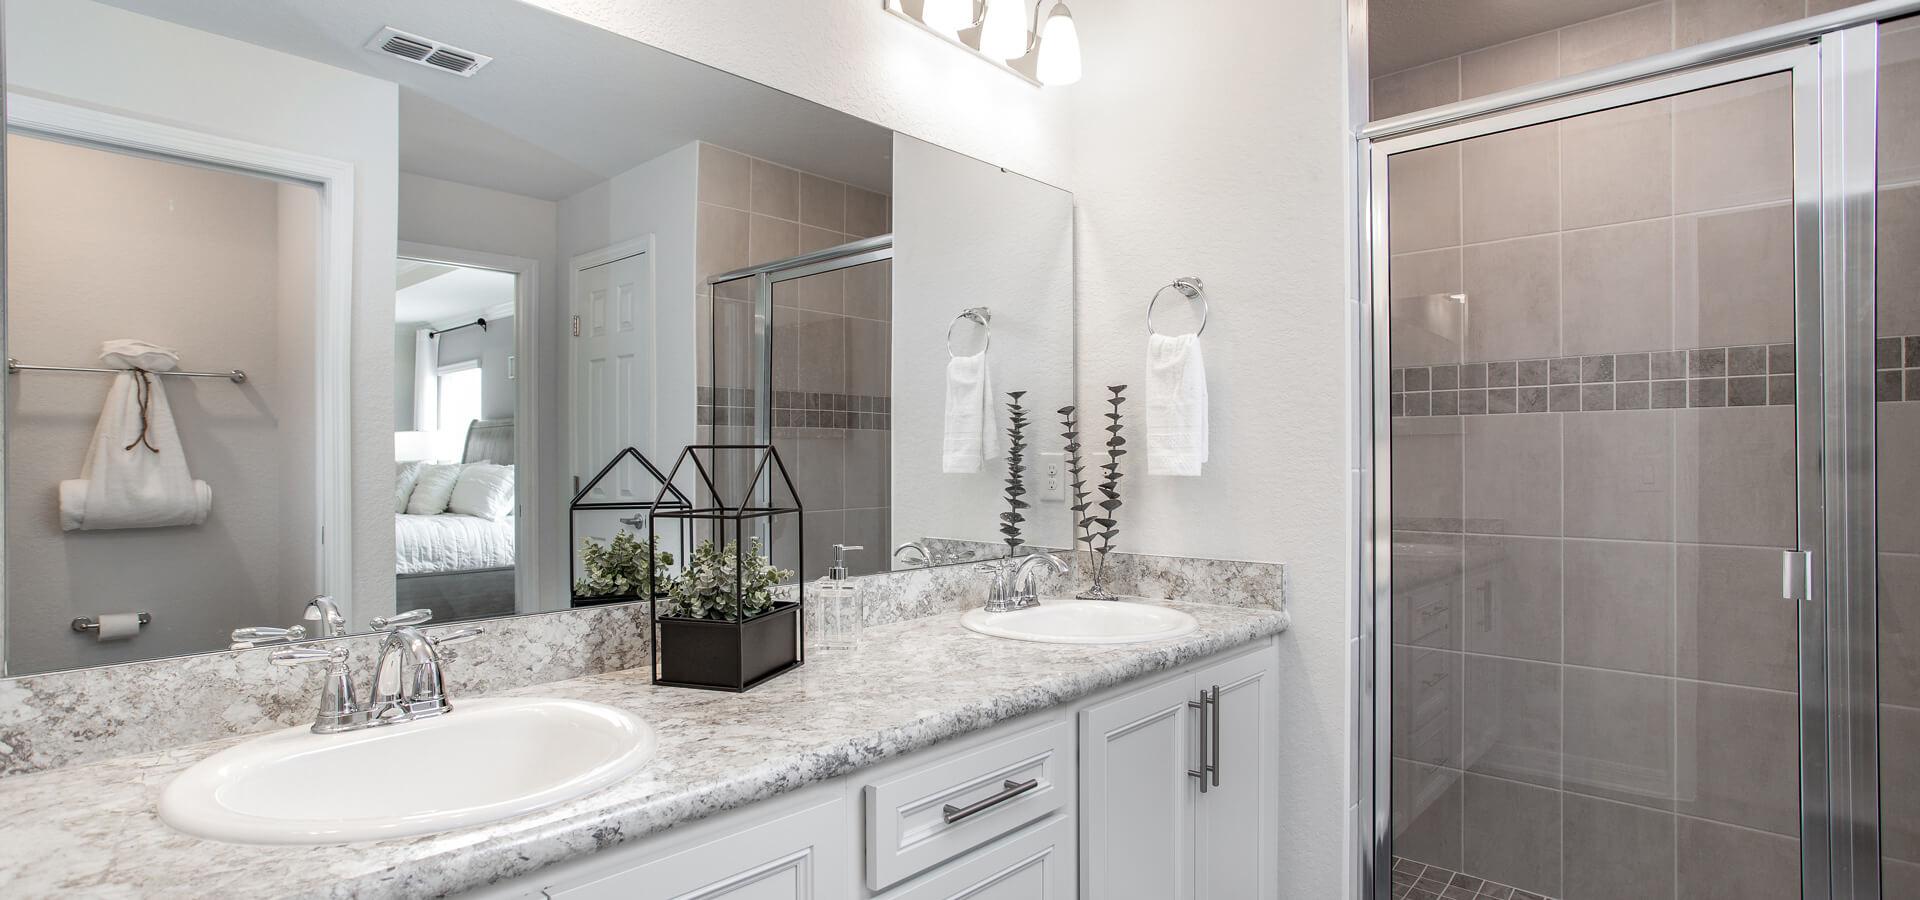 En-suite bathroom with dual vanity and tiled shower